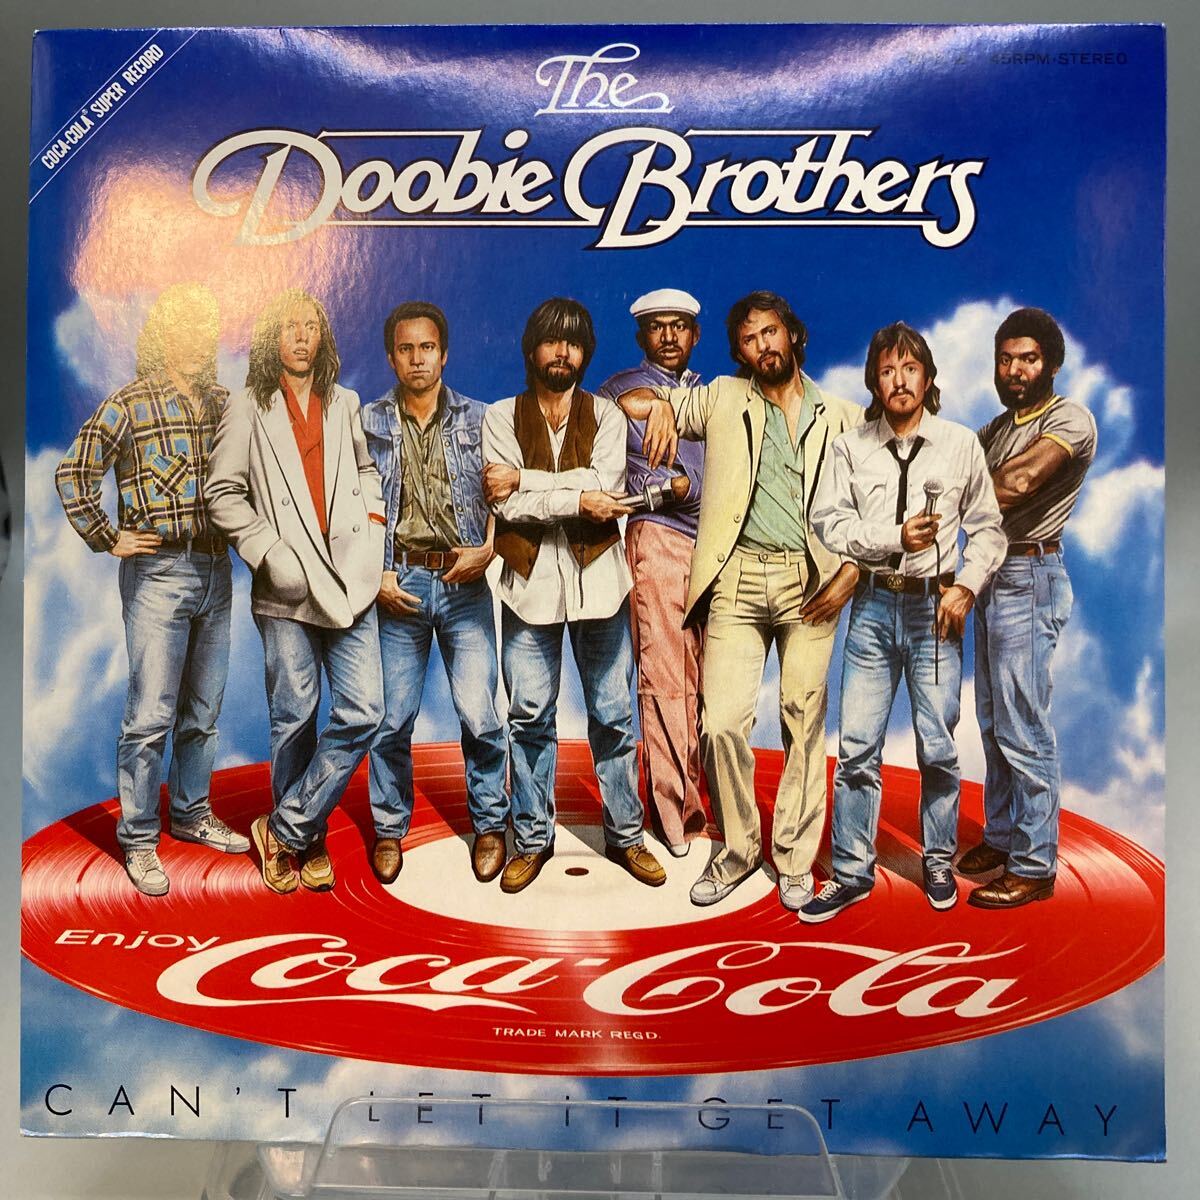 再生良好 EP The Doobie Brothers ドゥービー・ブラザーズ / Can’t Let It Get Away Coca-cola コカ・コーラ ピクチャー盤 WPS-2_画像1